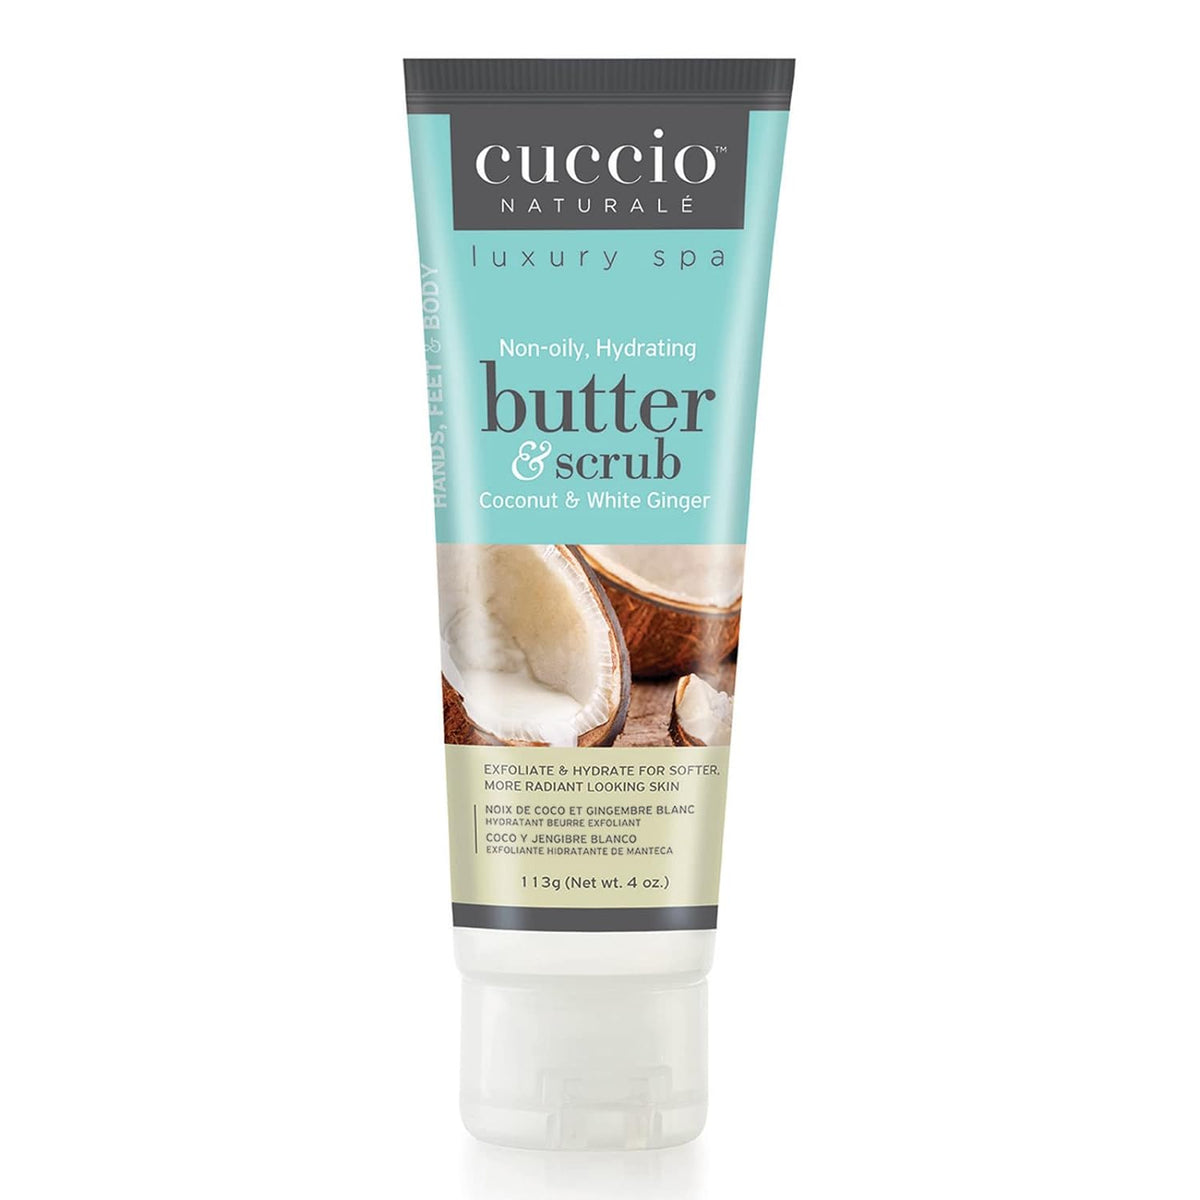 Cuccio Coconut & White Ginger Butter & Scrub  4 oz.